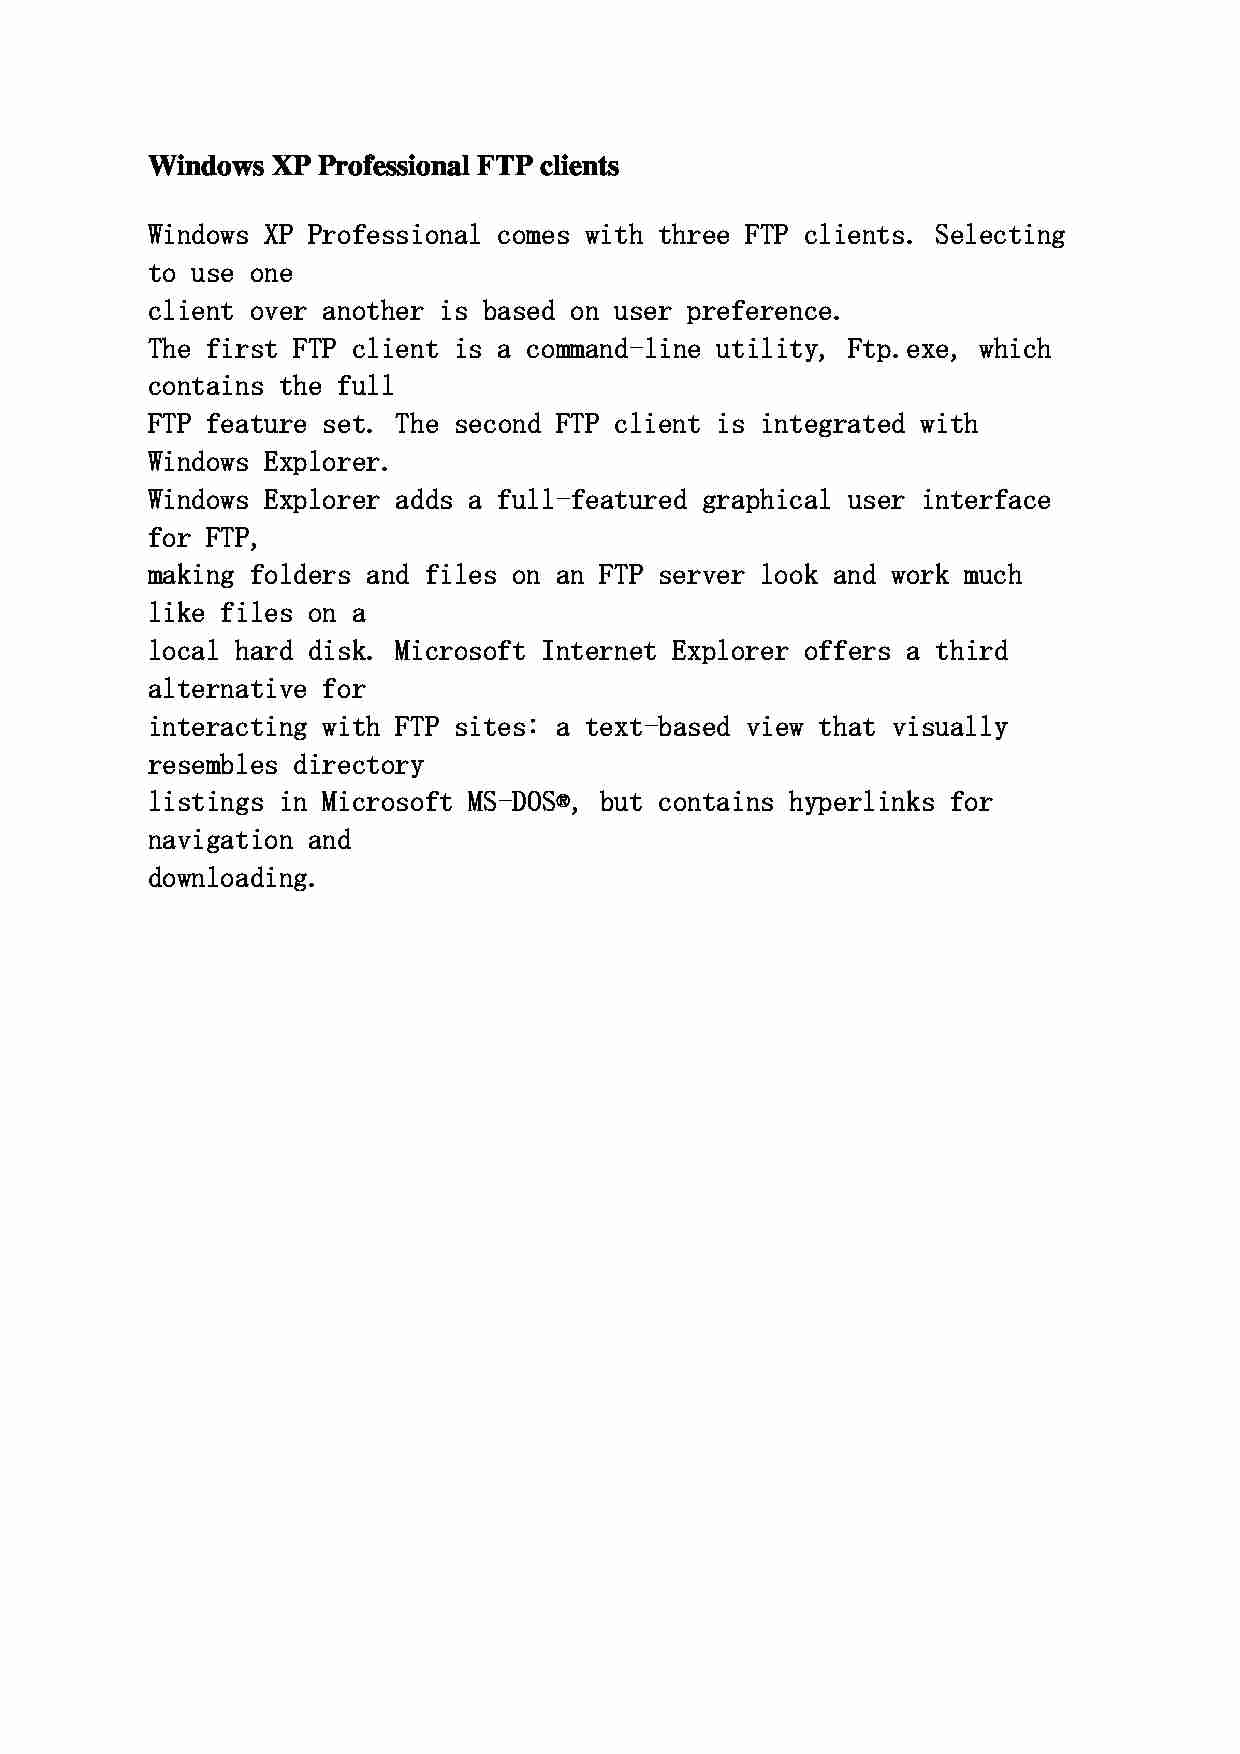 Windows XP Professional dla klientów FTP - strona 1